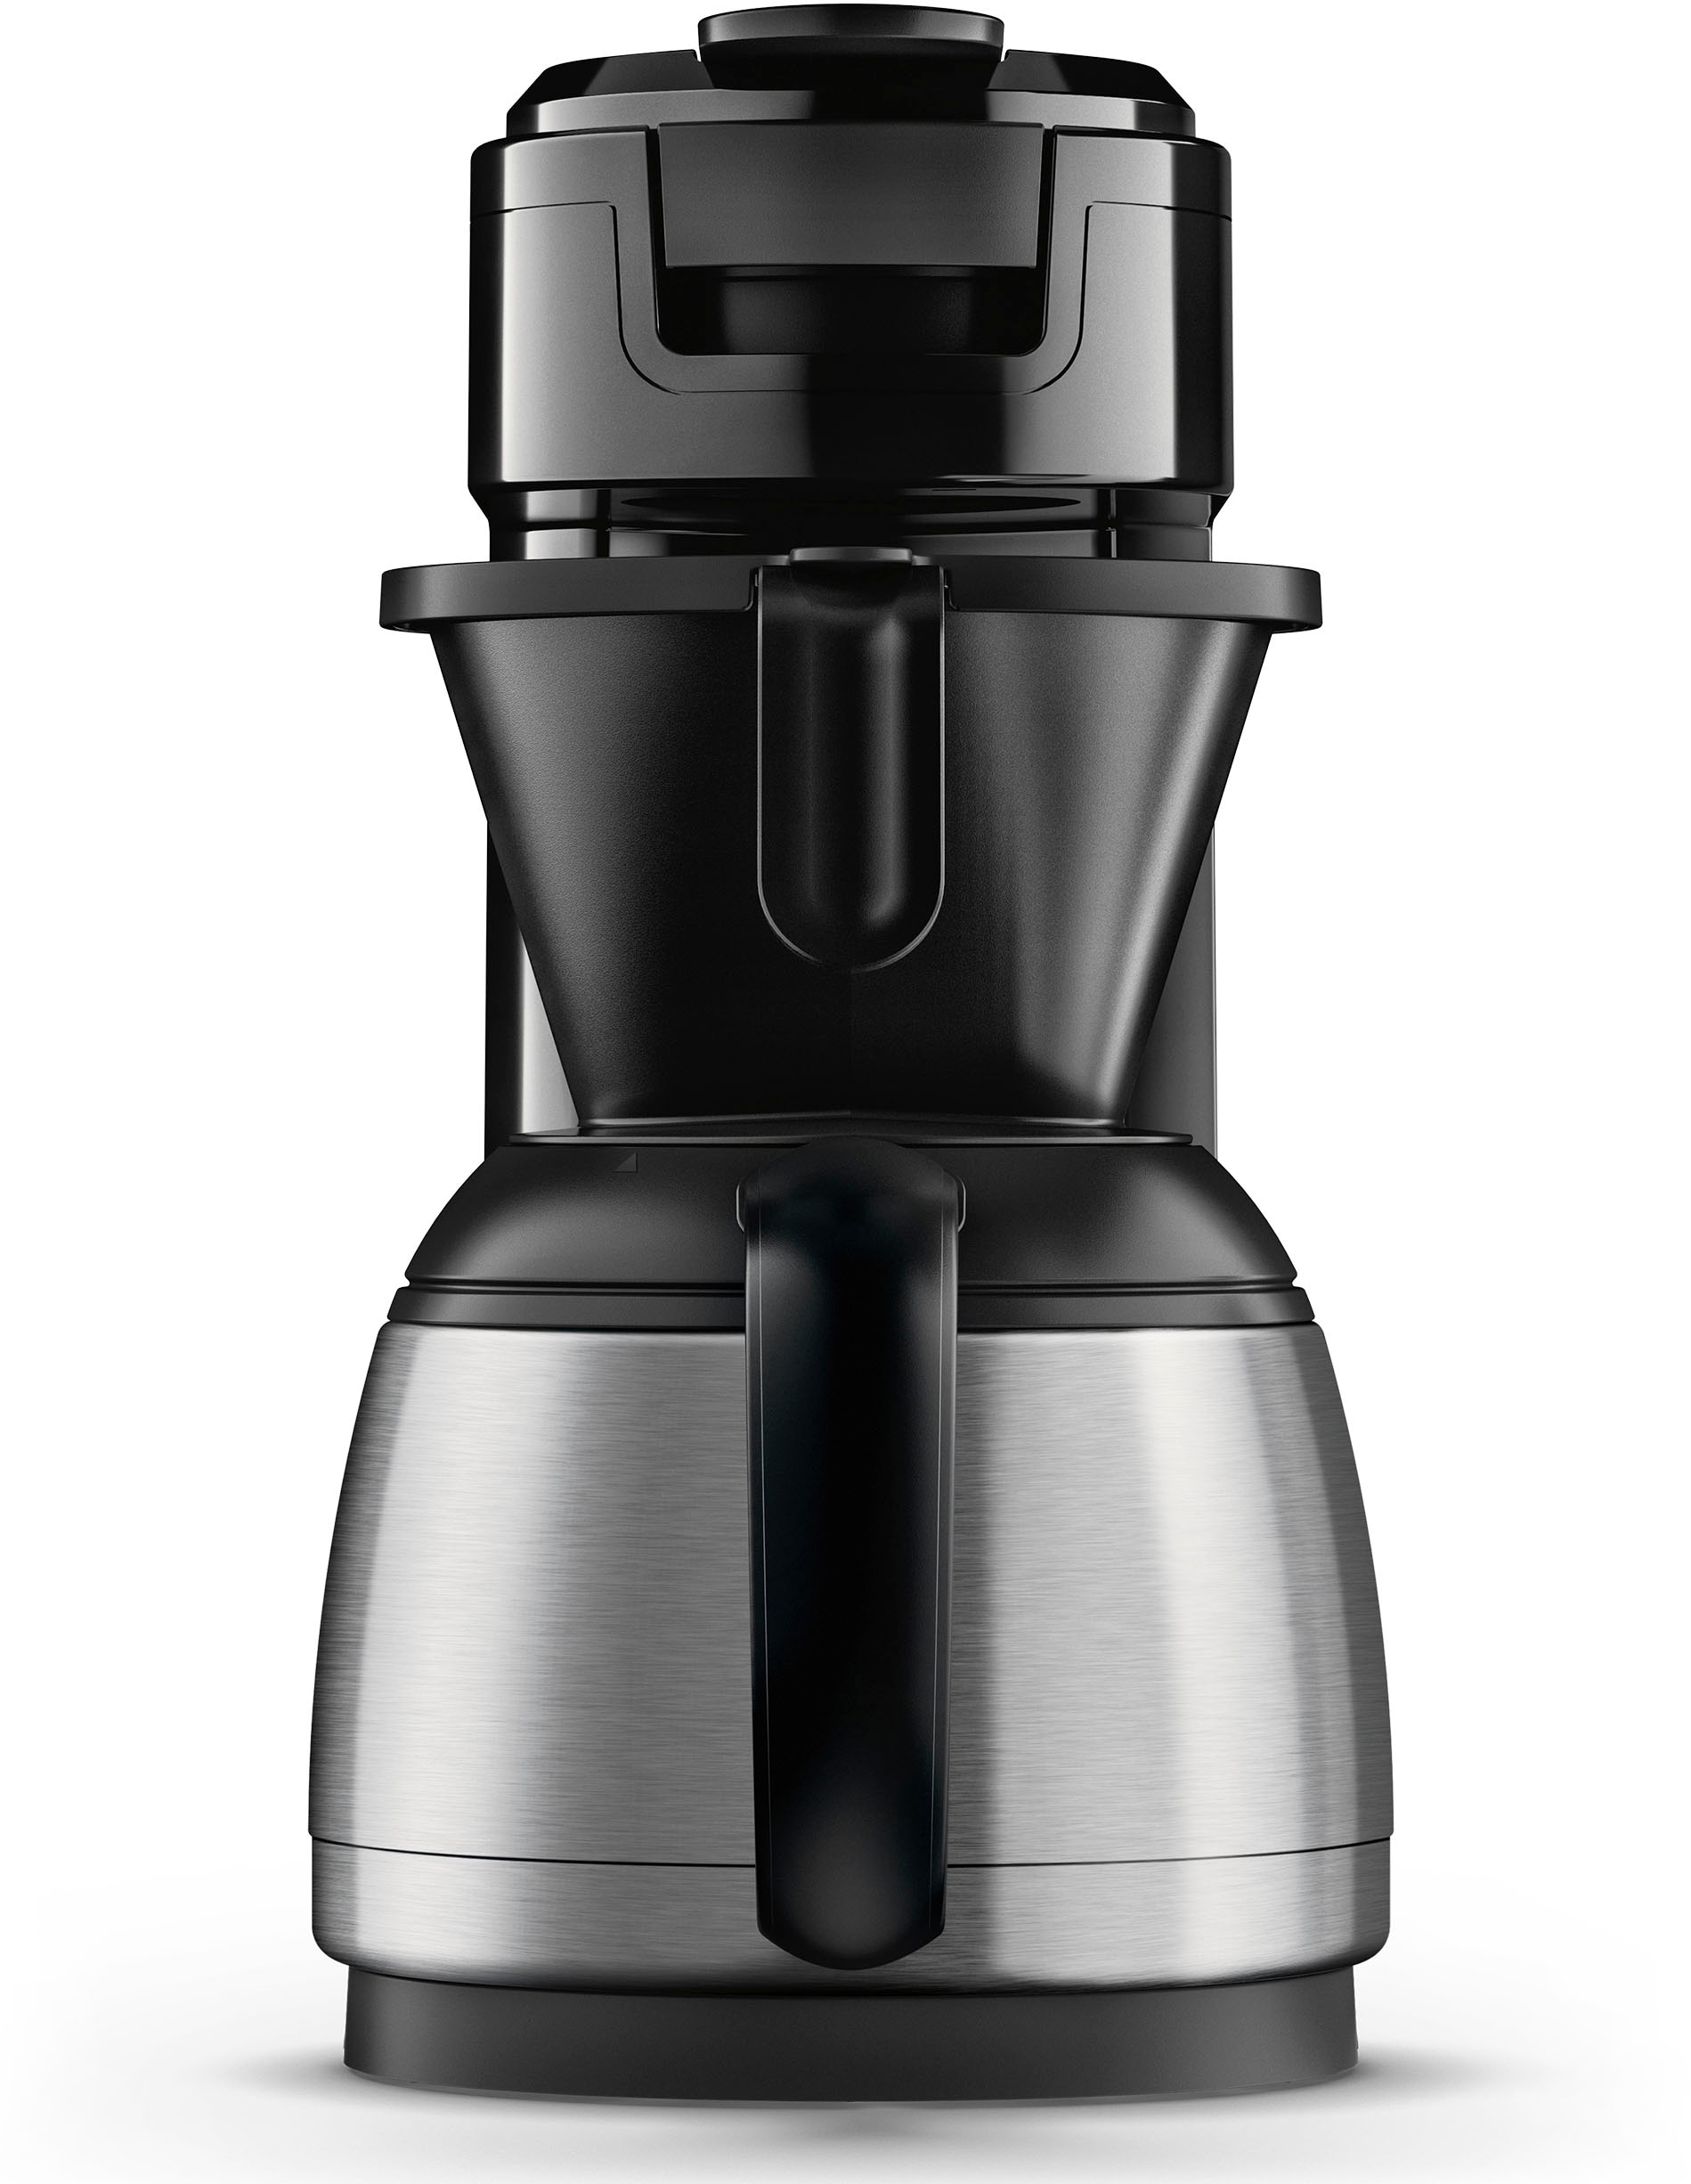 UVP »Switch 1 bestellen Senseo Kaffeepaddose Kaffeepadmaschine recyceltem Wert €9,90 26% inkl. Philips Plus, Boost Kaffeekanne, l HD6592/64, Crema online Technologie«, Plastik, Kaffee